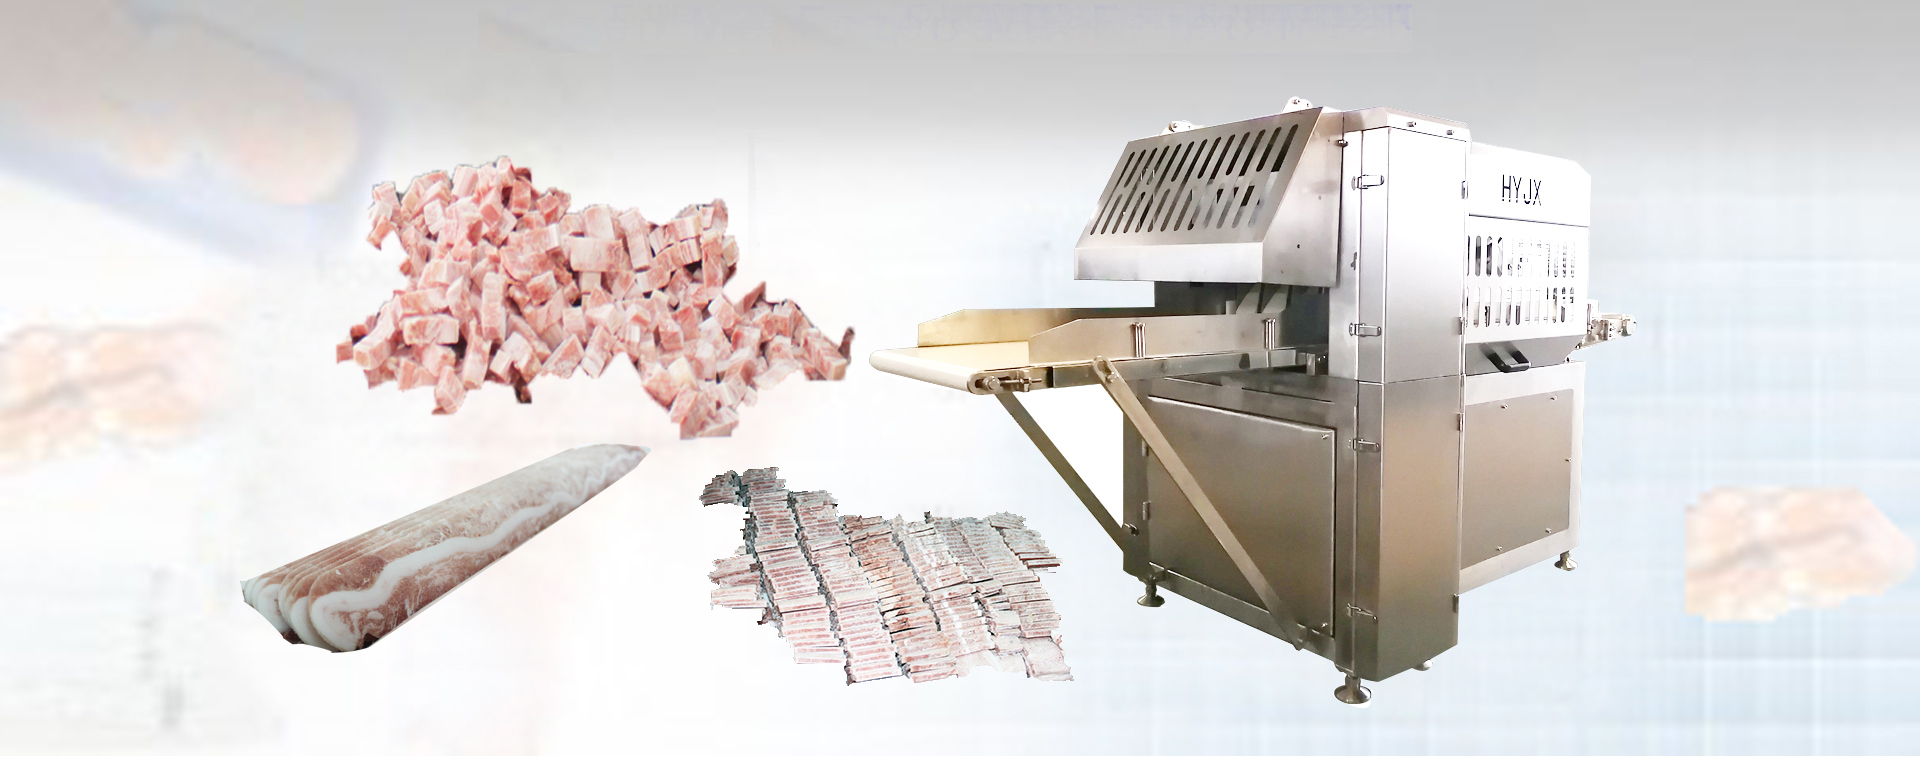 Mašina za rezanje smrznutog mesa